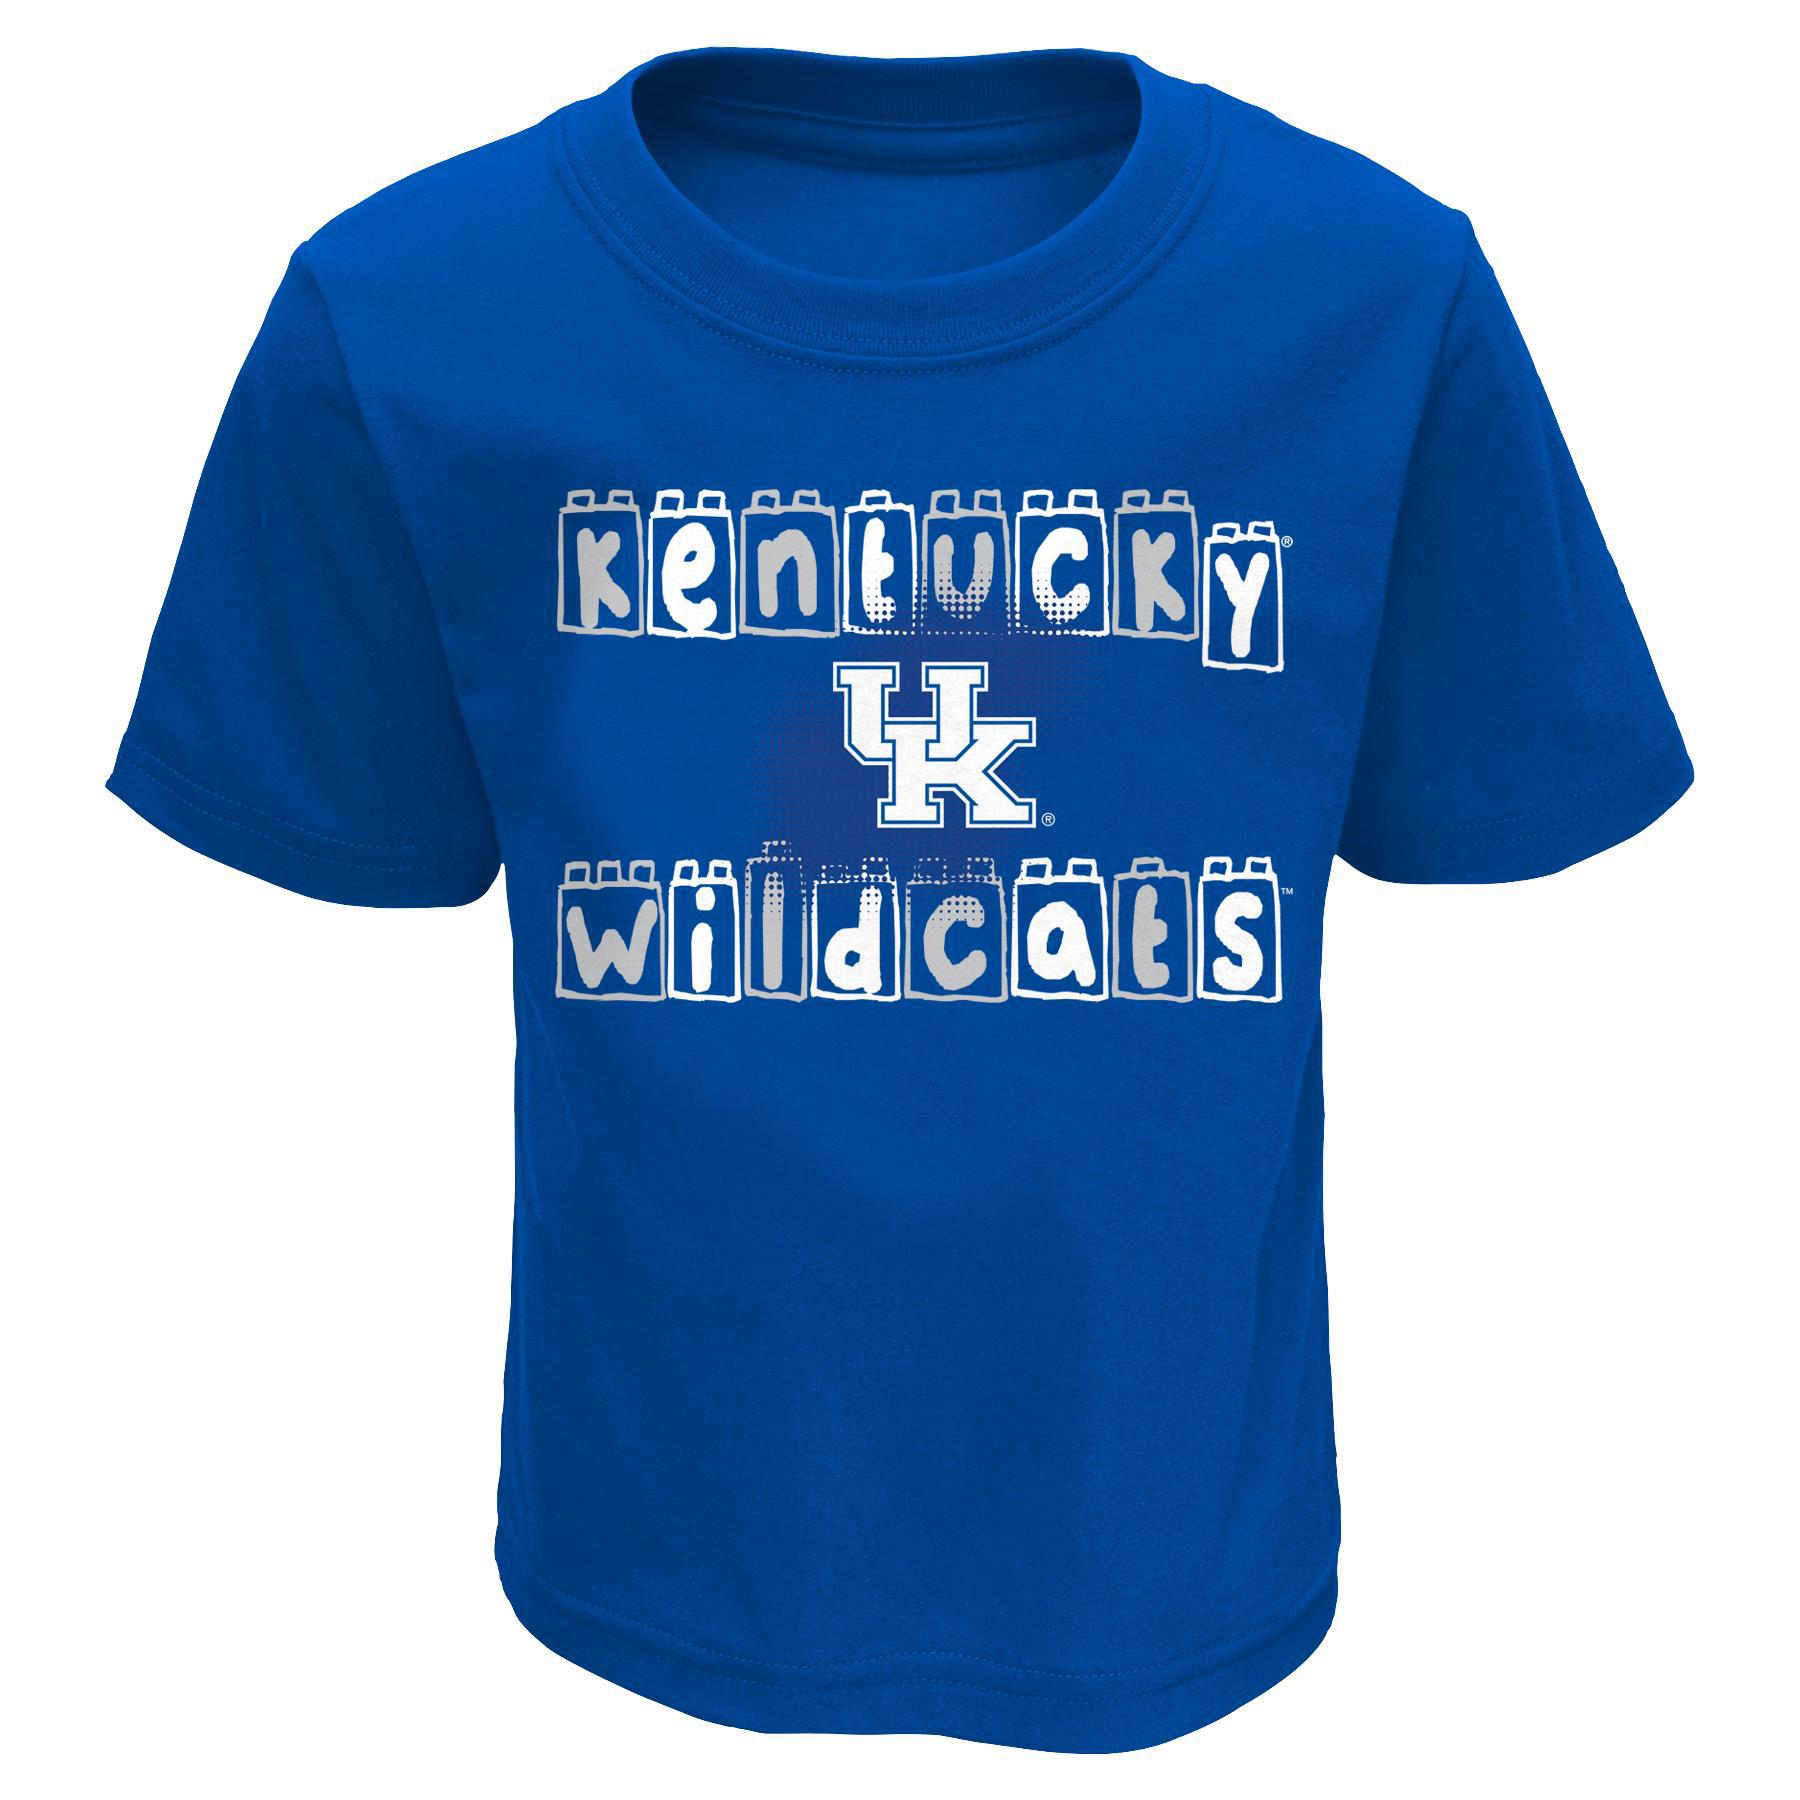 NCAA Toddler's Graphic T-Shirt - Kentucky Wildcats